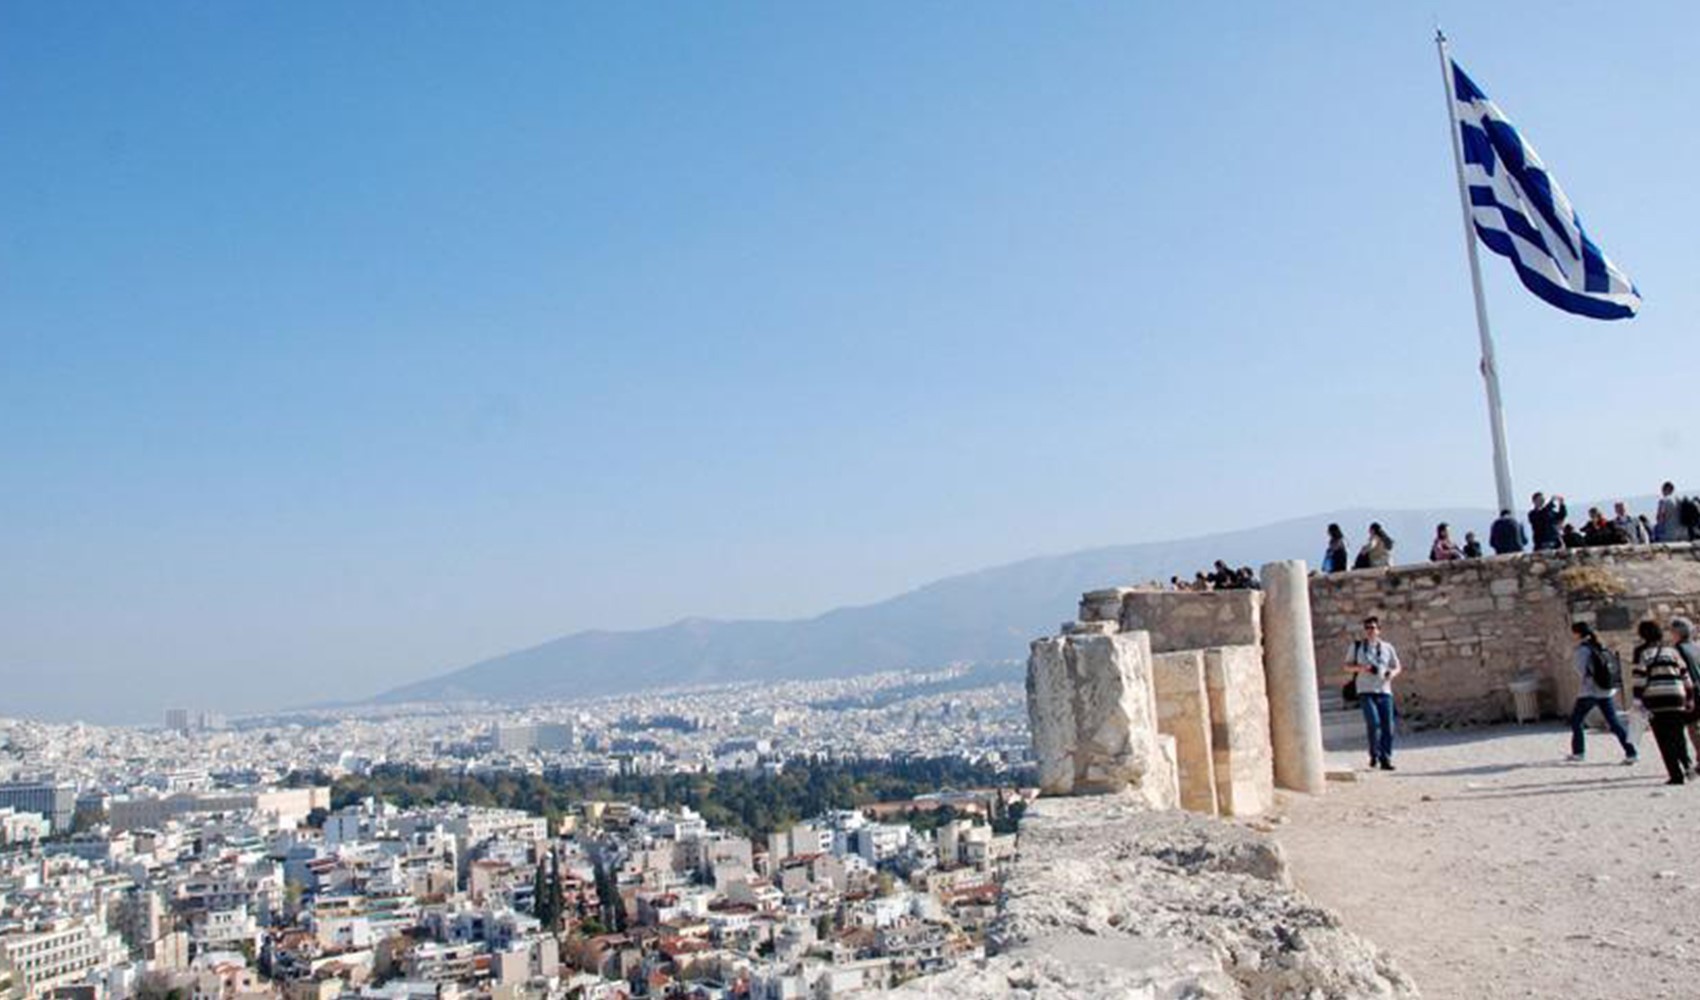 Yunan adalarına kolay seyahatin detayları belli oldu: 'Fiyatlar daha uygun'